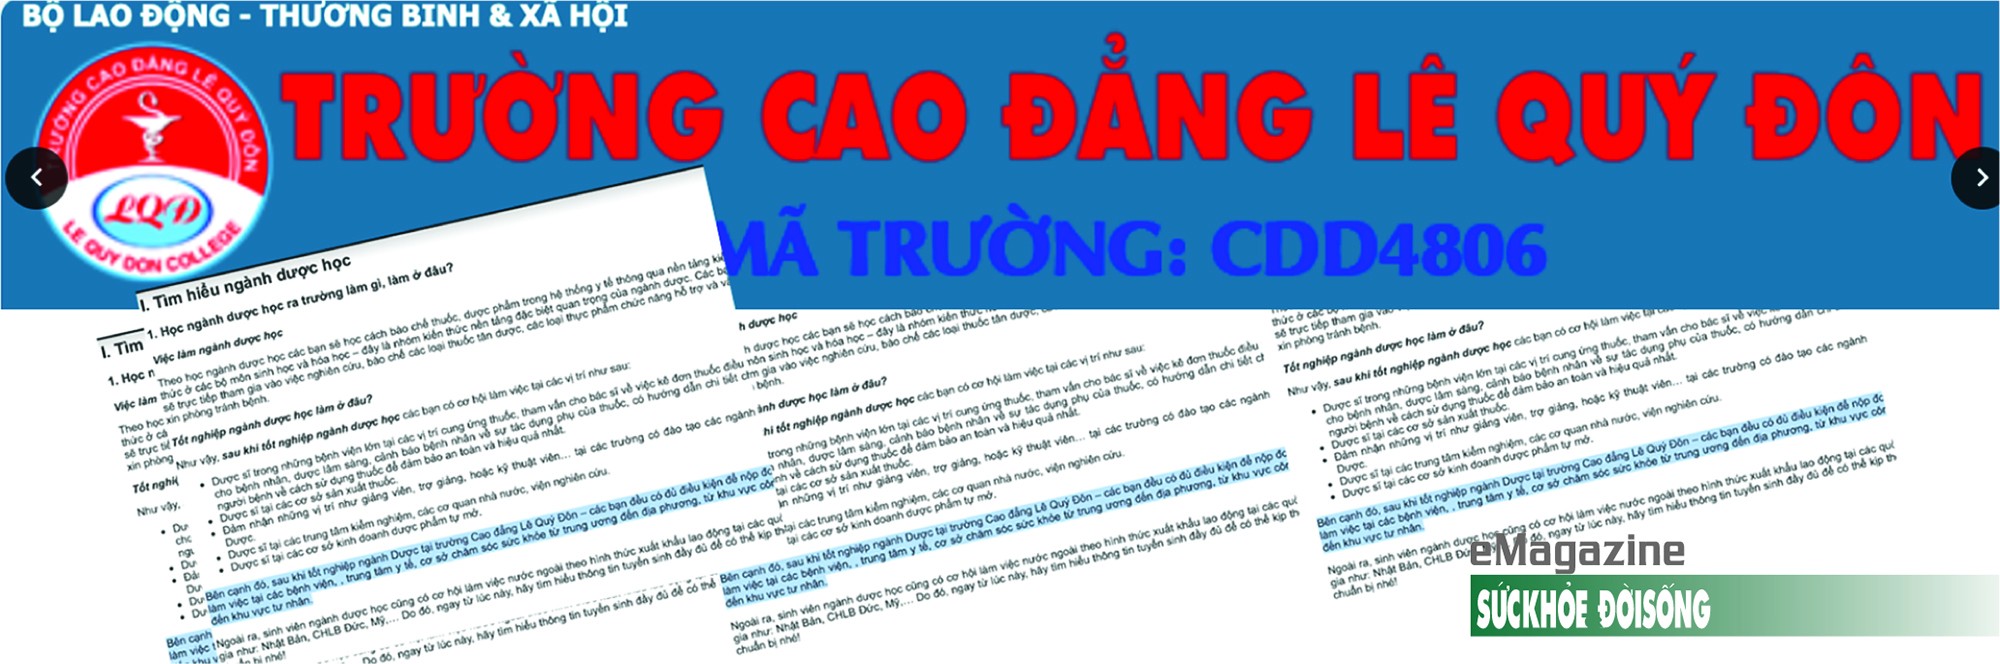 tren-wedsite-cua-truong-cao-dang-le-quy-don-gioi-thieu-sau-khi-nhan-bang-duoc-co-the-lam-viec-tai-cac-benh-vien-trung-tam-y-te-co-so-cham-soc-suc-khoe-tu-trung-uong-den-dia-phuong-1661393477.jpg